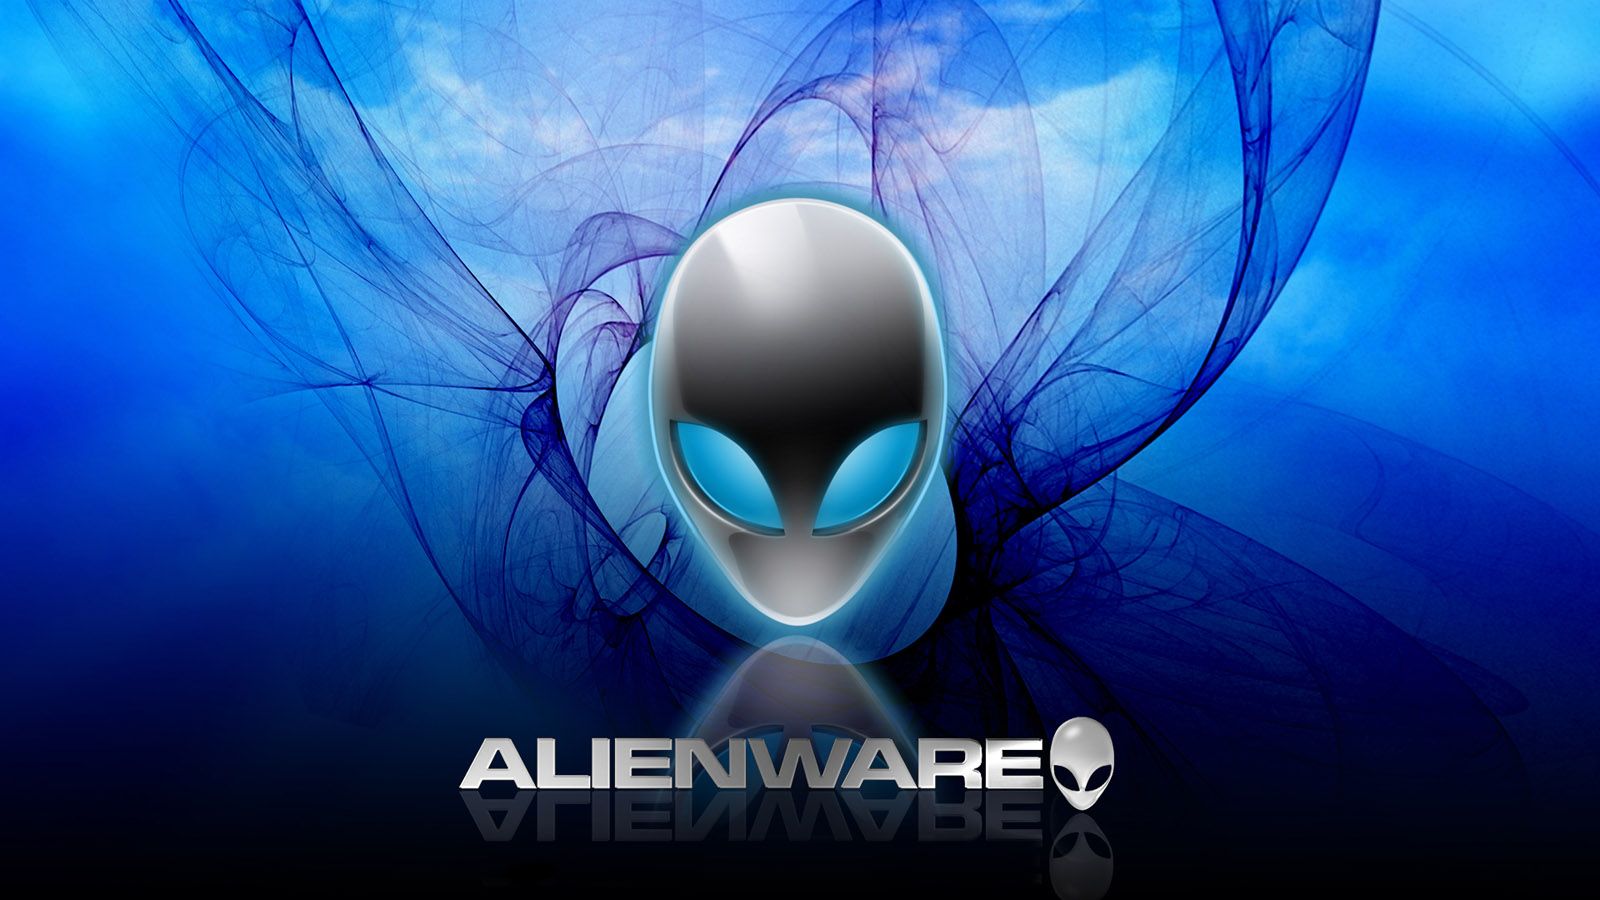 Hãy cùng khám phá bộ ảnh nền màn hình Alienware độc đáo với chất lượng hình ảnh siêu nét và ấn tượng, giúp máy tính của bạn thật sự nổi bật và sang trọng!